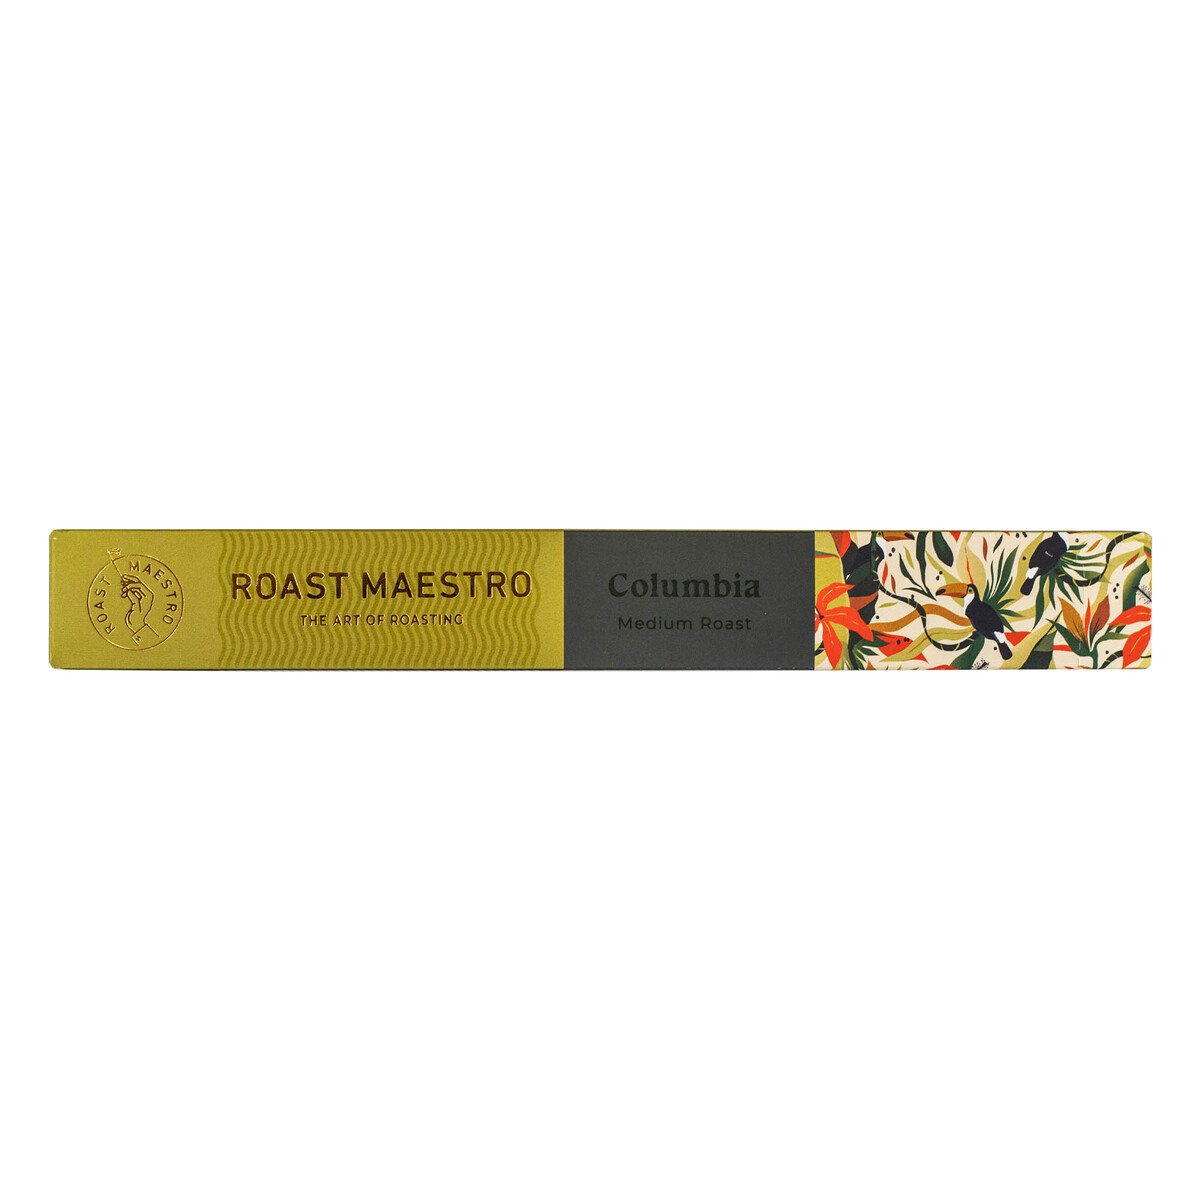 Roast Maestro Columbia Medium Roast Coffee Capsules 10 pcs 52 g